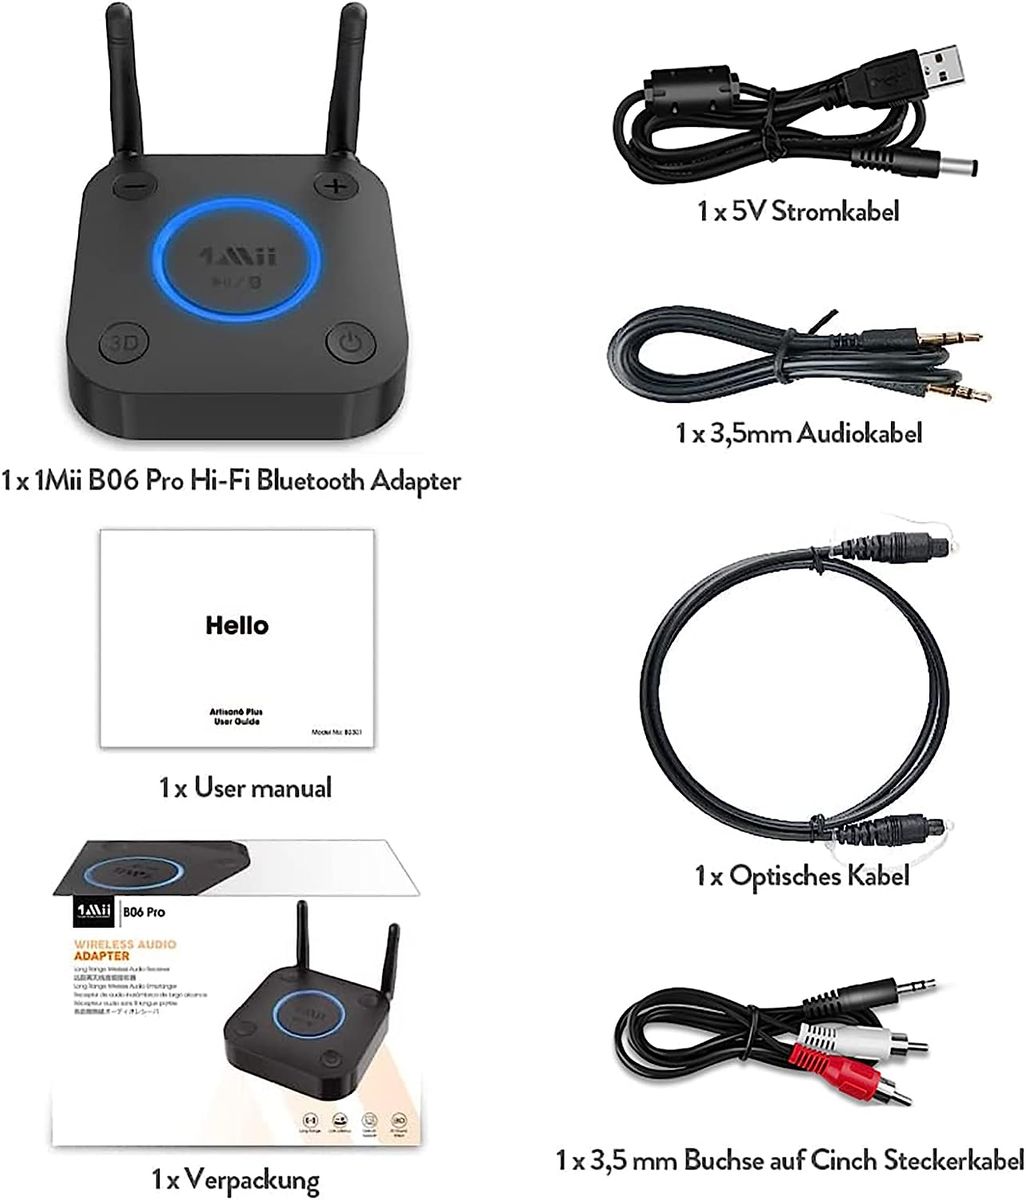 1Mii Großer Reichweite Empfänger, HiFi Kabelloser Audio Adapter, aptX Low  Latency Bluetooth 5.0 Receiver mit 3D